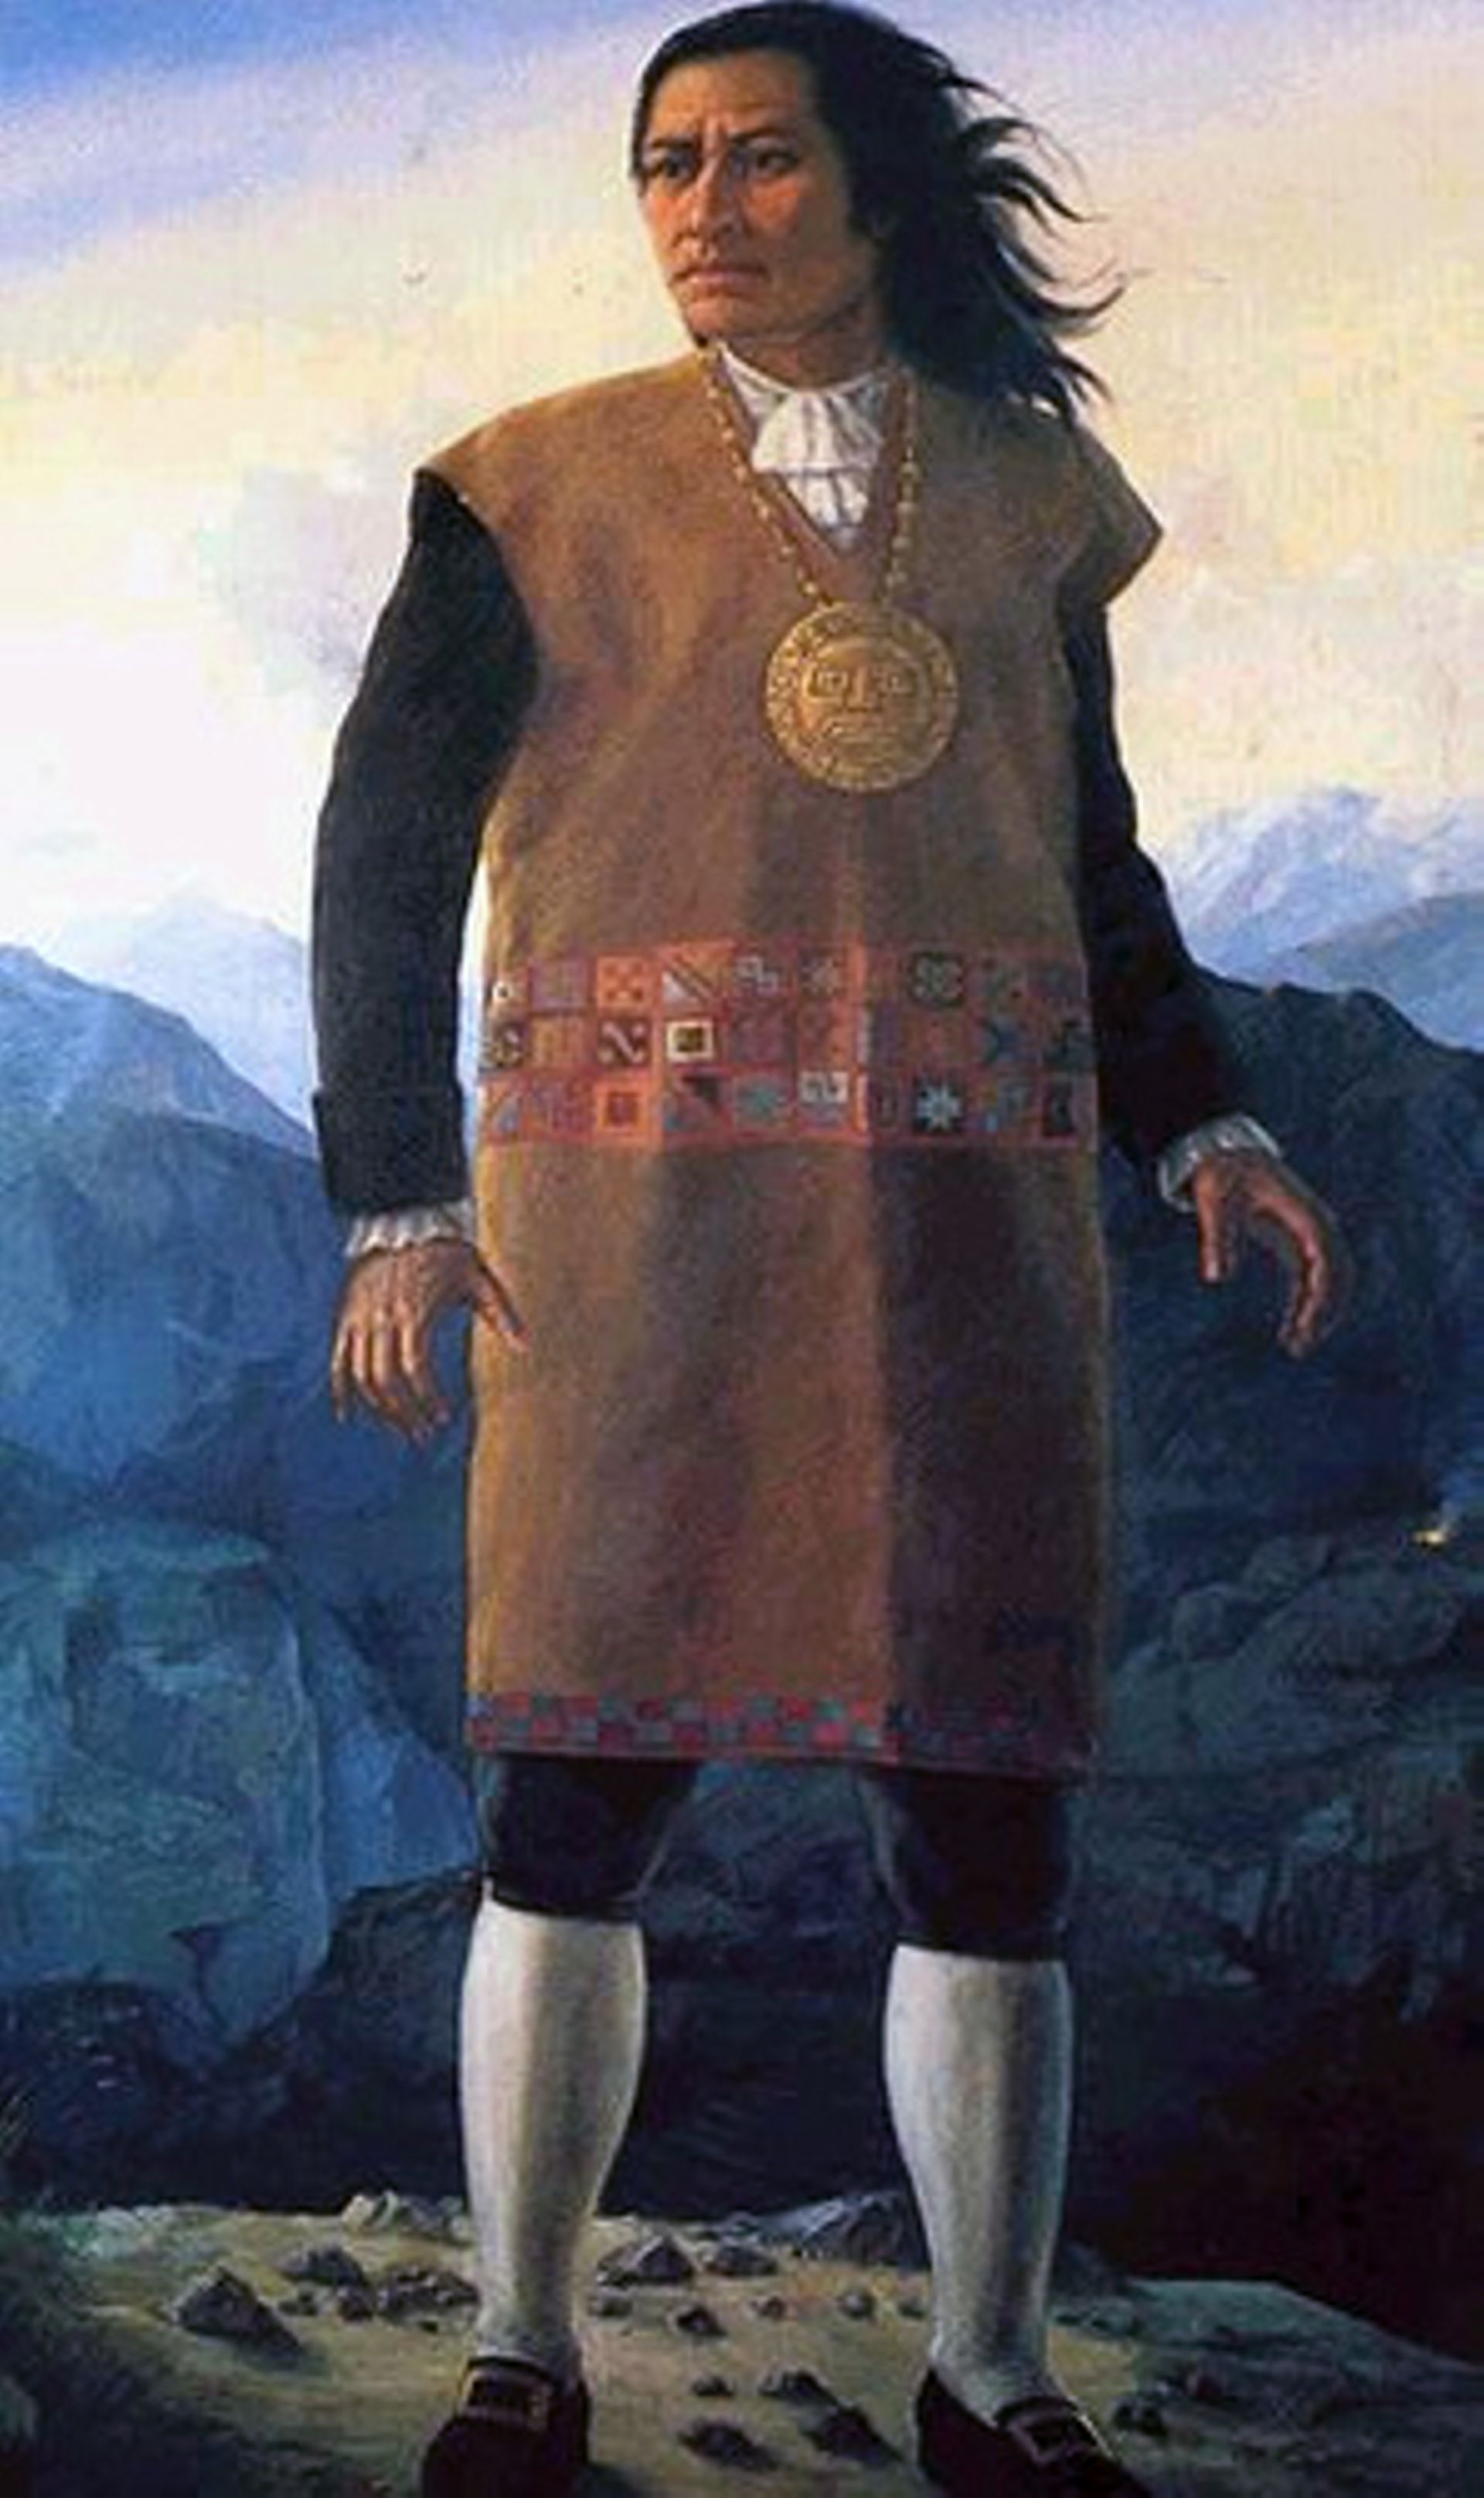 Qui était ce dernier rebelle Inca qui a donné son nom au célèbre 2PAC ?